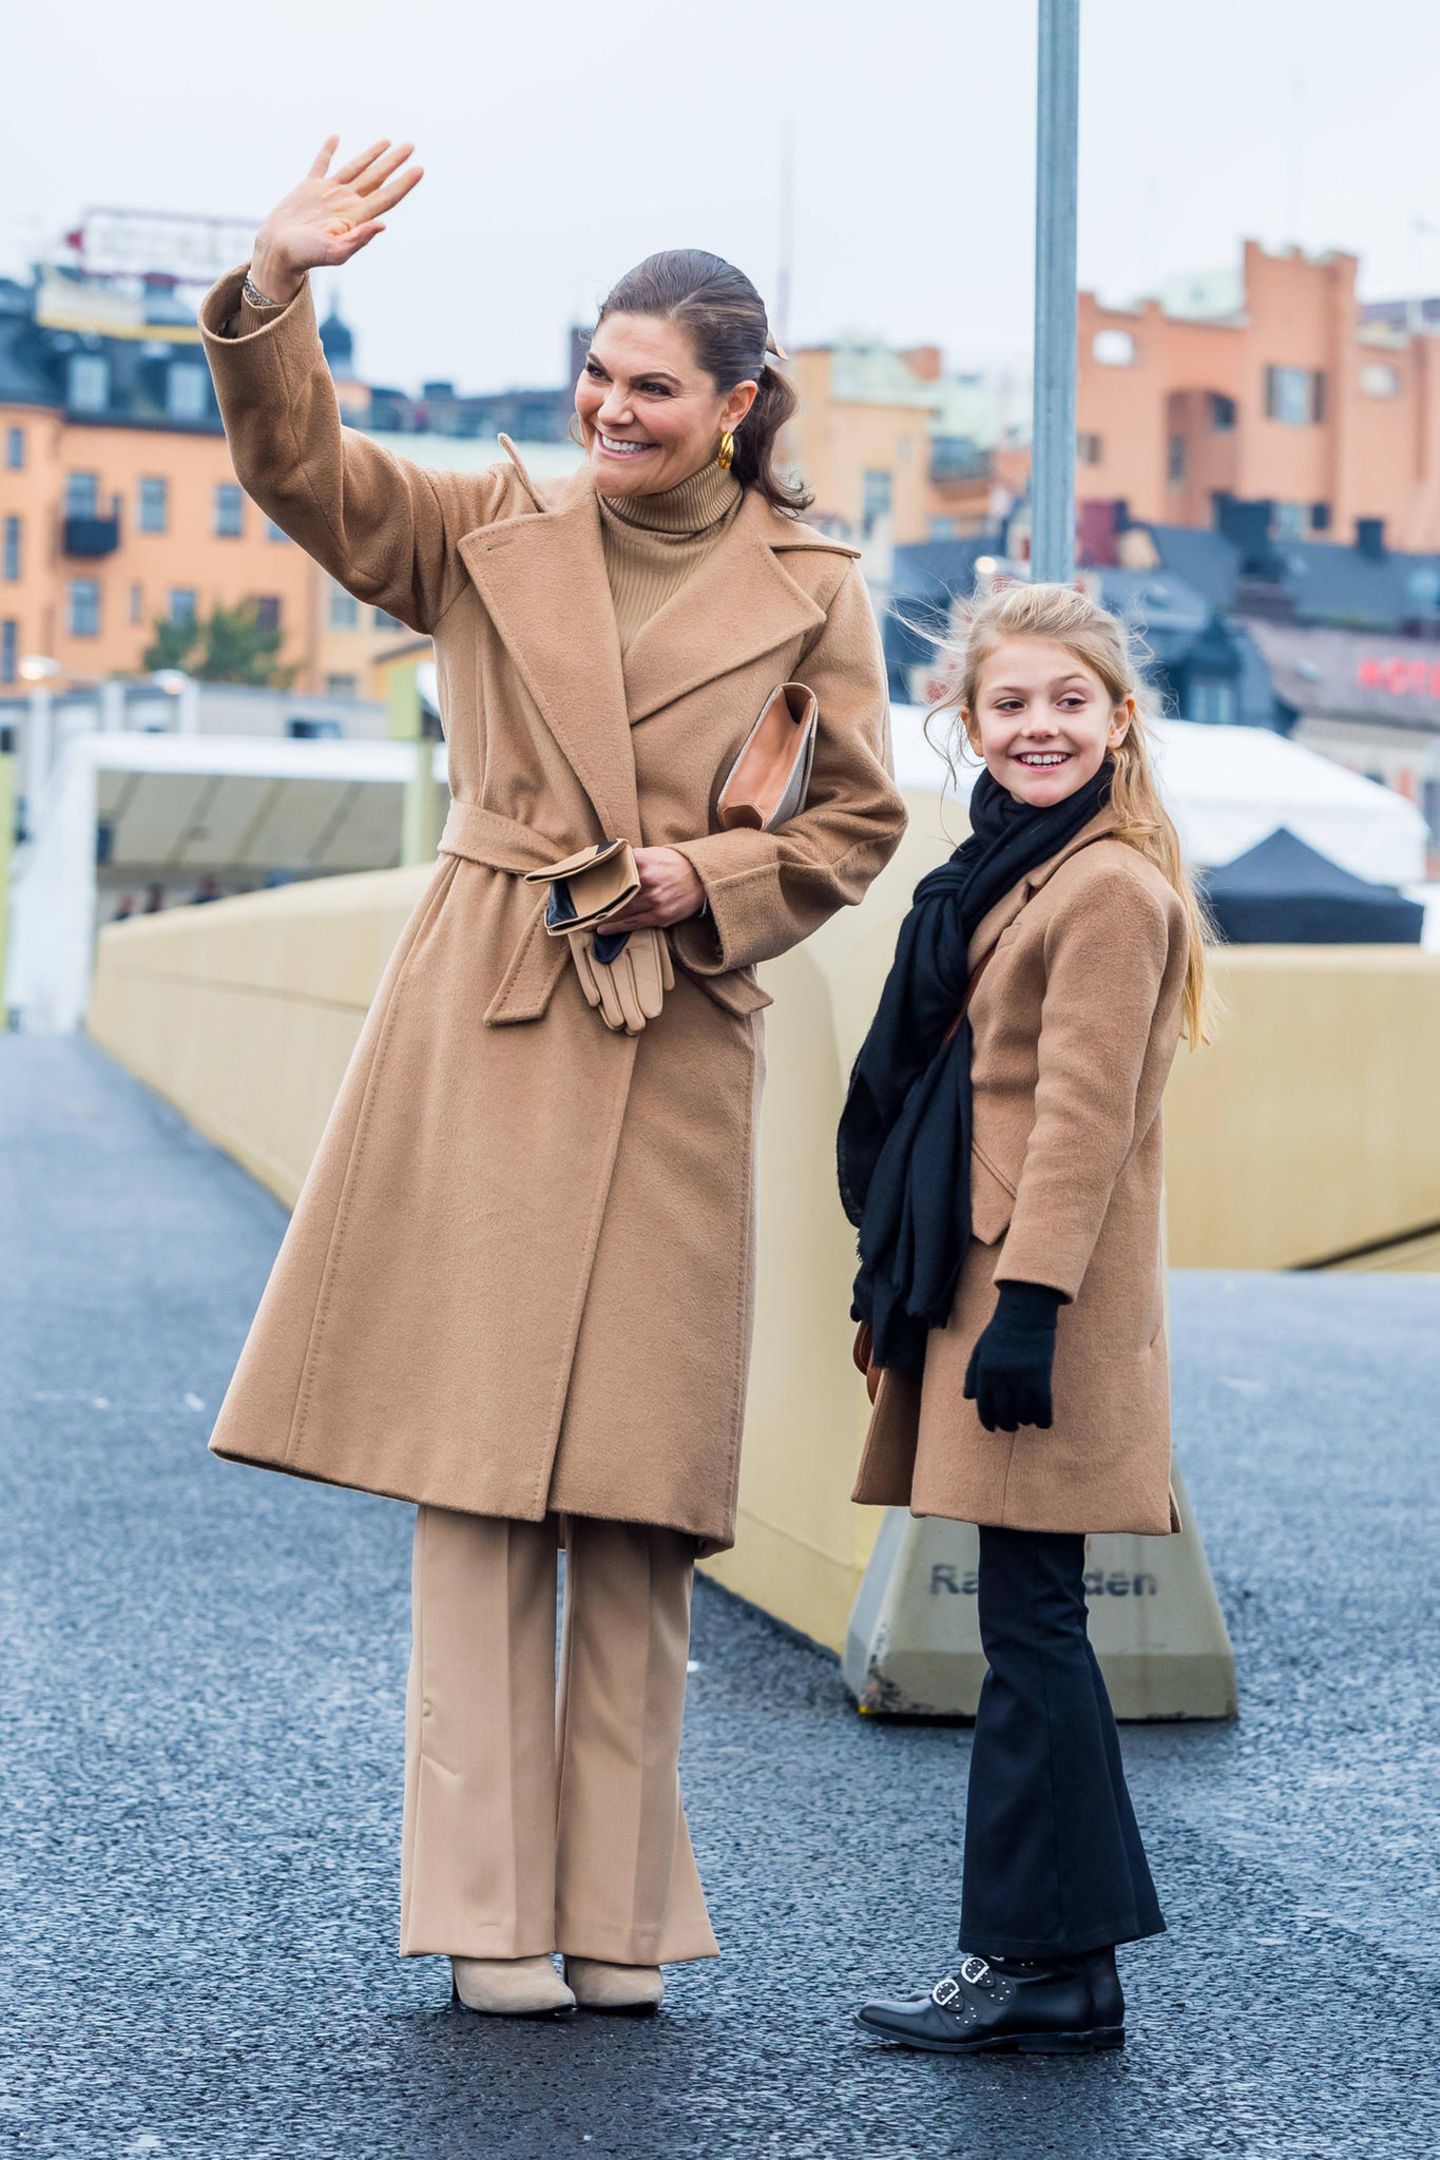 Was für ein Duo: Victoria und Estelle zeigen sich bei der Einweihung der "Slussbron" in Stockholm im perfekten Partnerlook. Beide tragen beigefarbene Mäntel, bei Victoria ist auch der Rest des Outfits beige, bei Estelle dagegen schwarz.